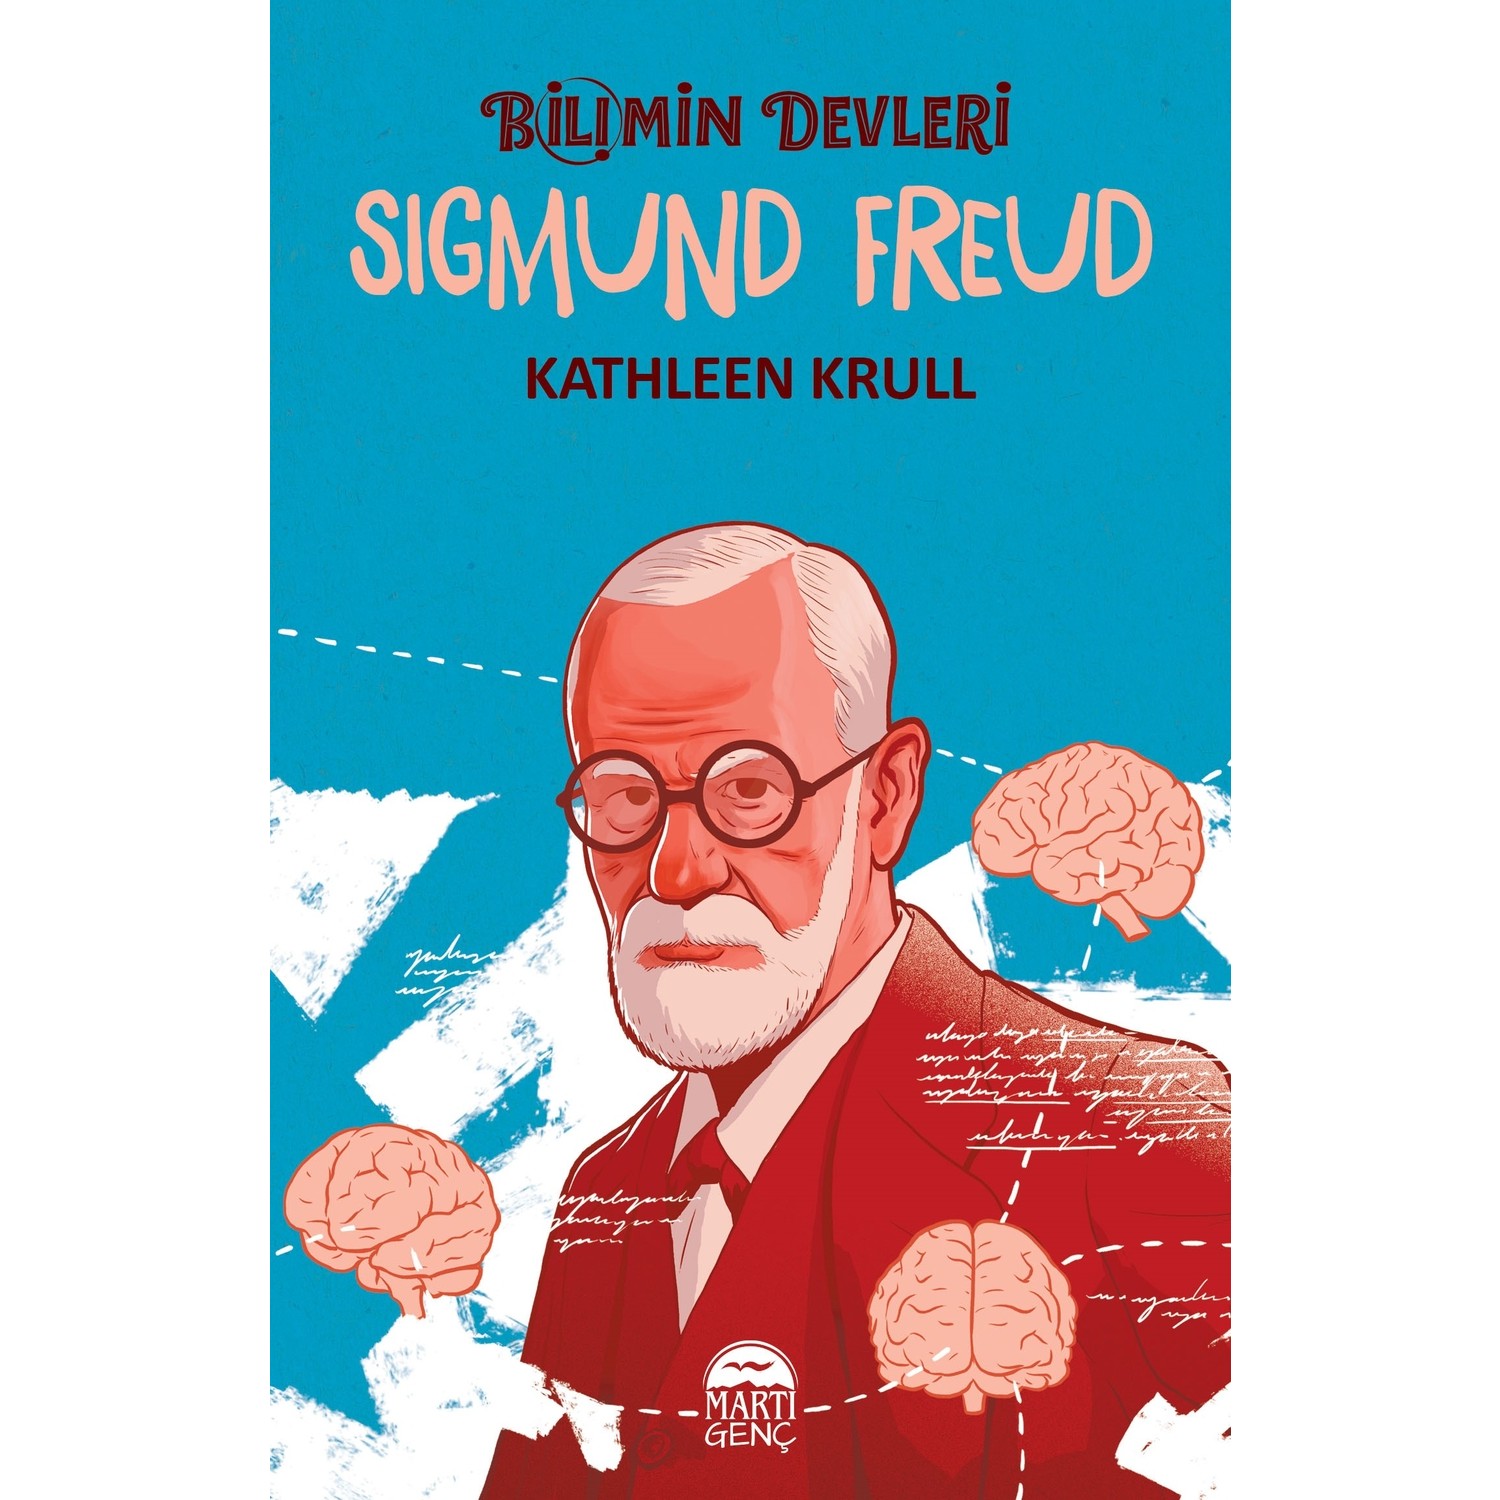 Bilimin Devleri Sigmund Freud Kathleen Krull Kitabı Ve Fiyatı 8222